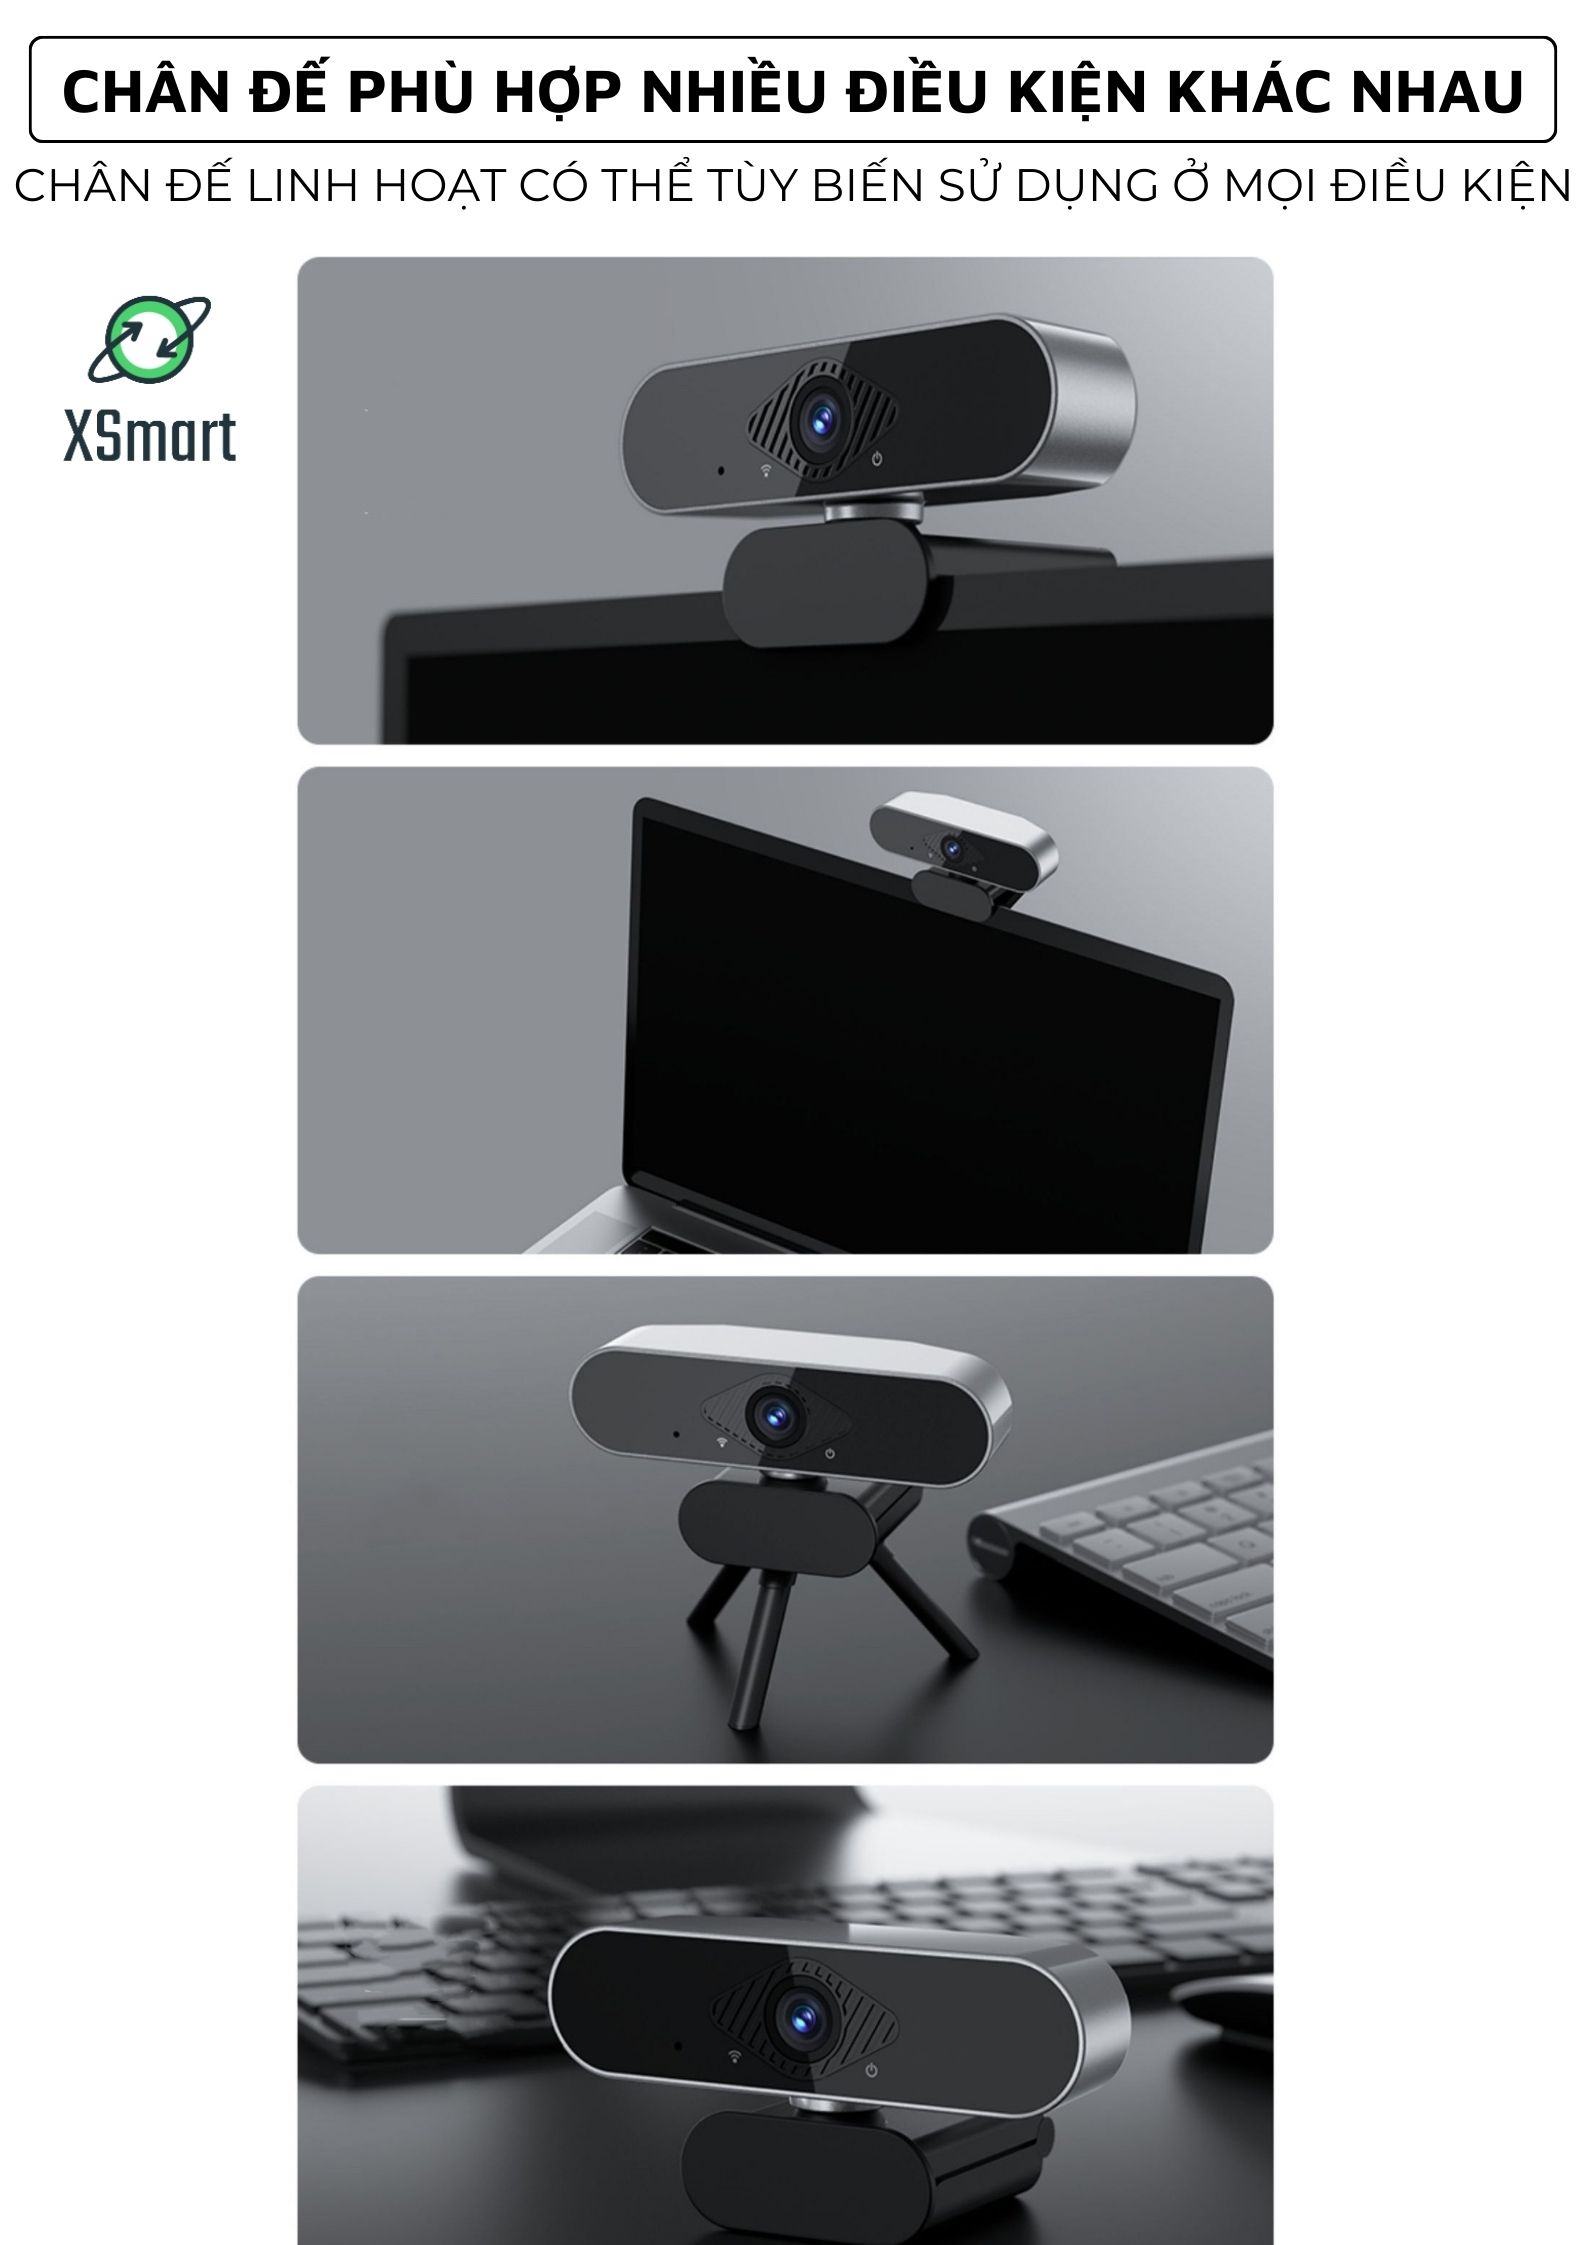 Webcam máy tính laptop cao cấp Q20 PRO 2K Siêu Nét có mic hỗ trợ học online, livestream